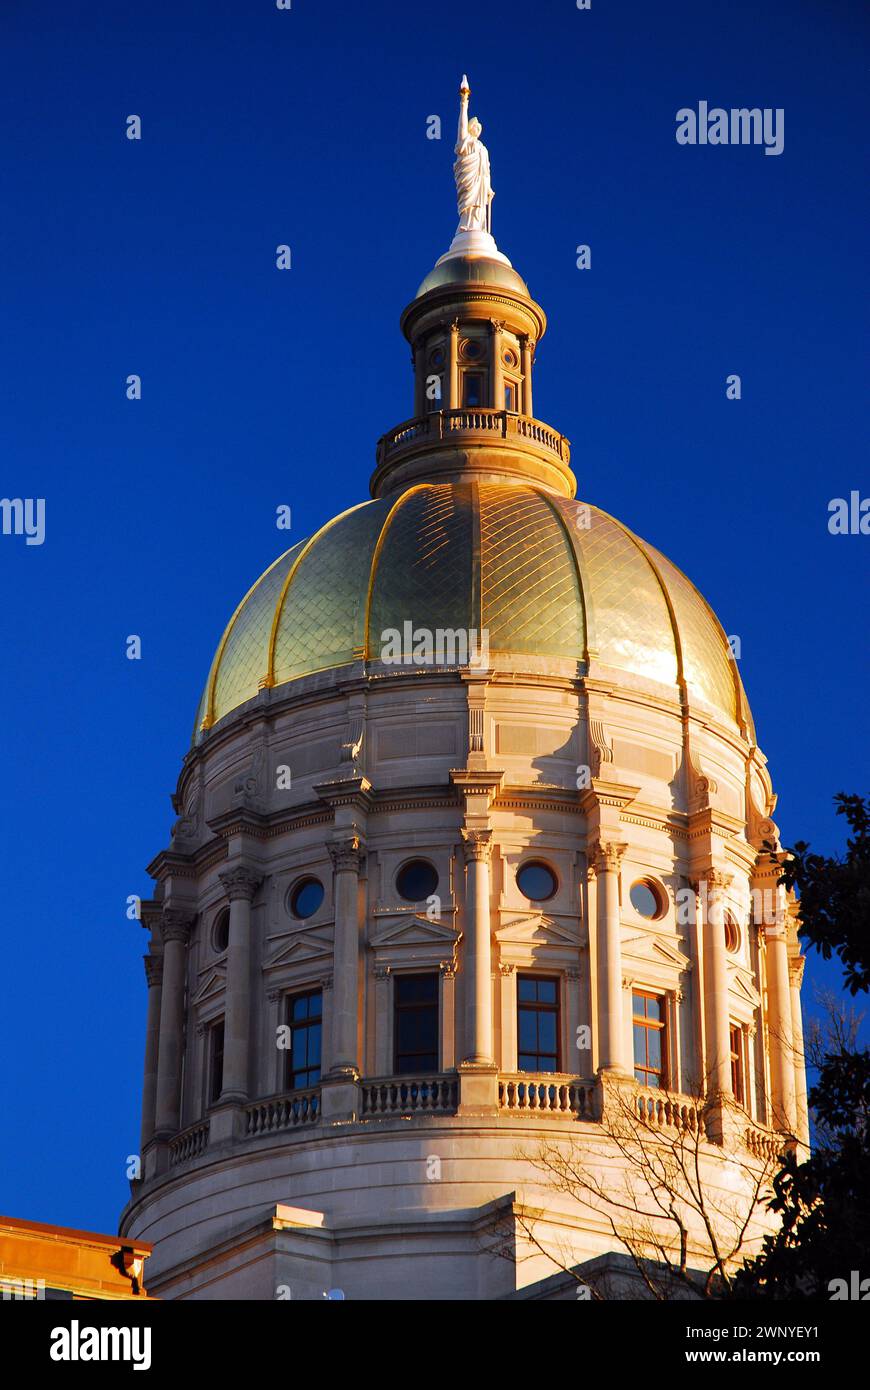 Die goldene Kuppel des Georgia State Capitol steht vor dem blauen Himmel. Stockfoto